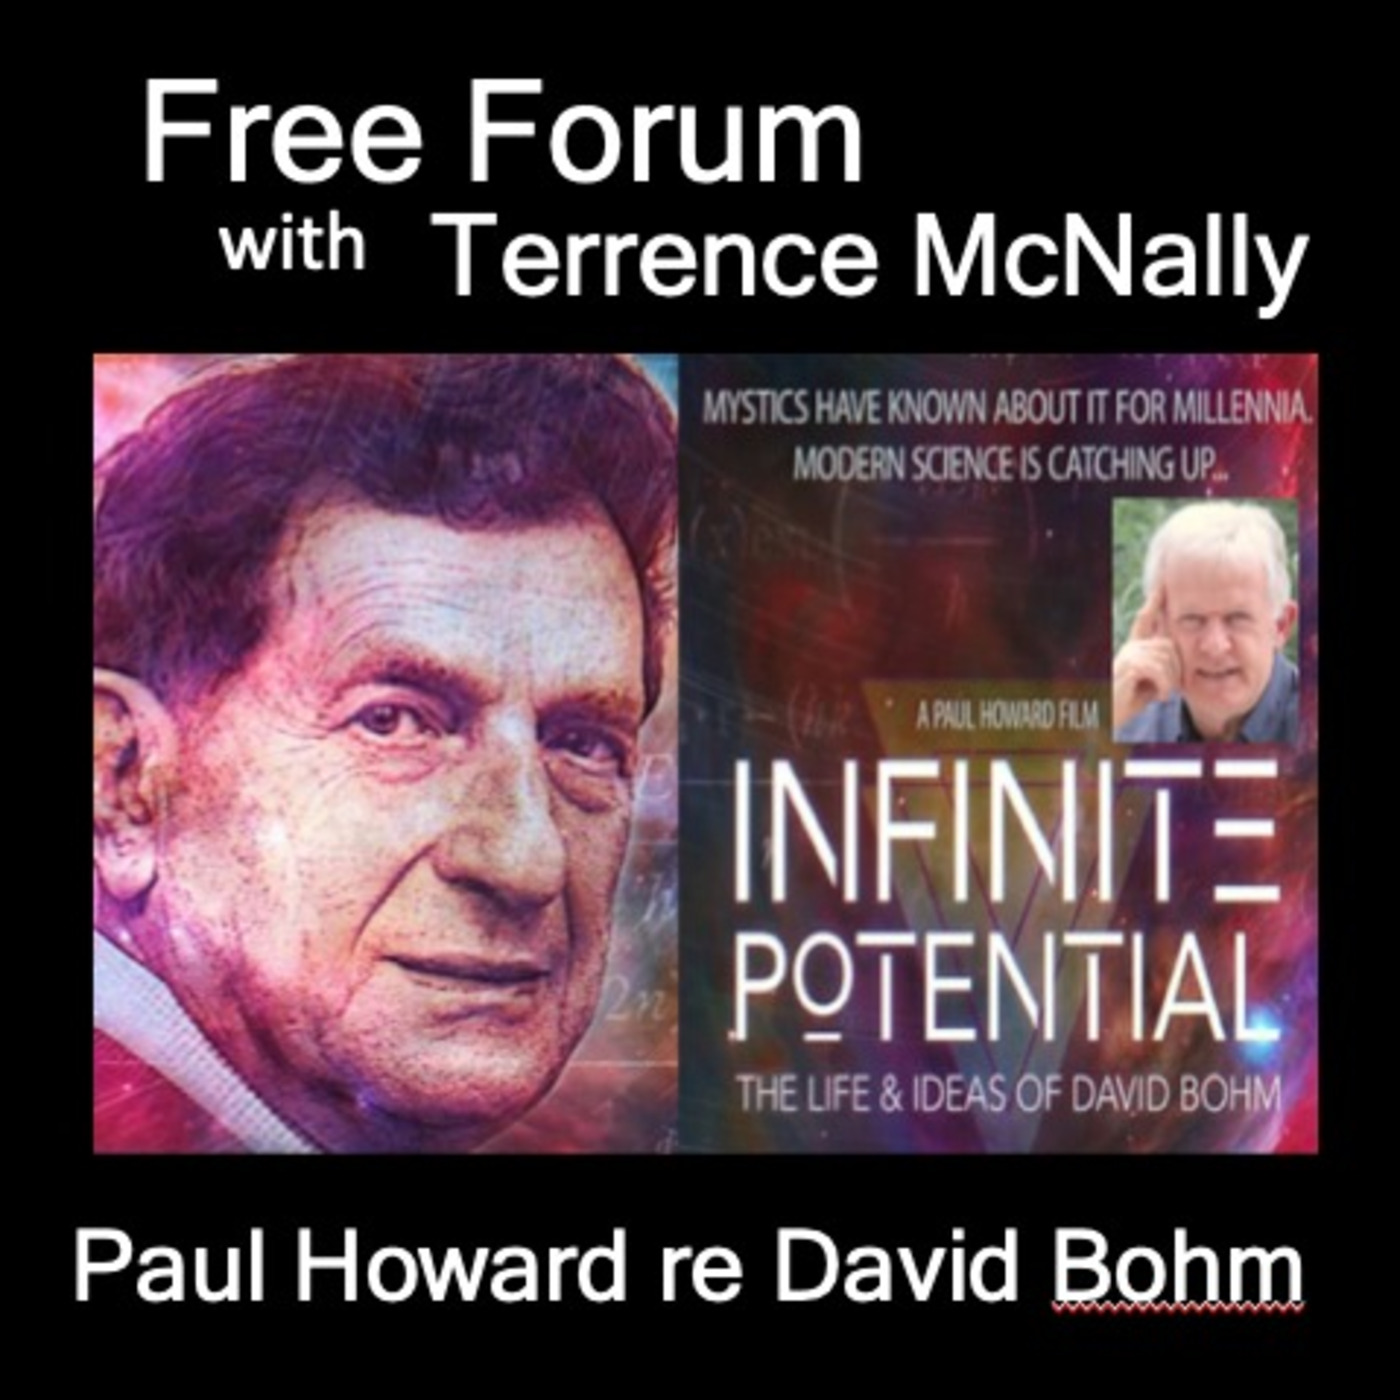 PAUL HOWARD, director, INFINITE POTENTIAL: Life & Ideas of DAVID BOHM